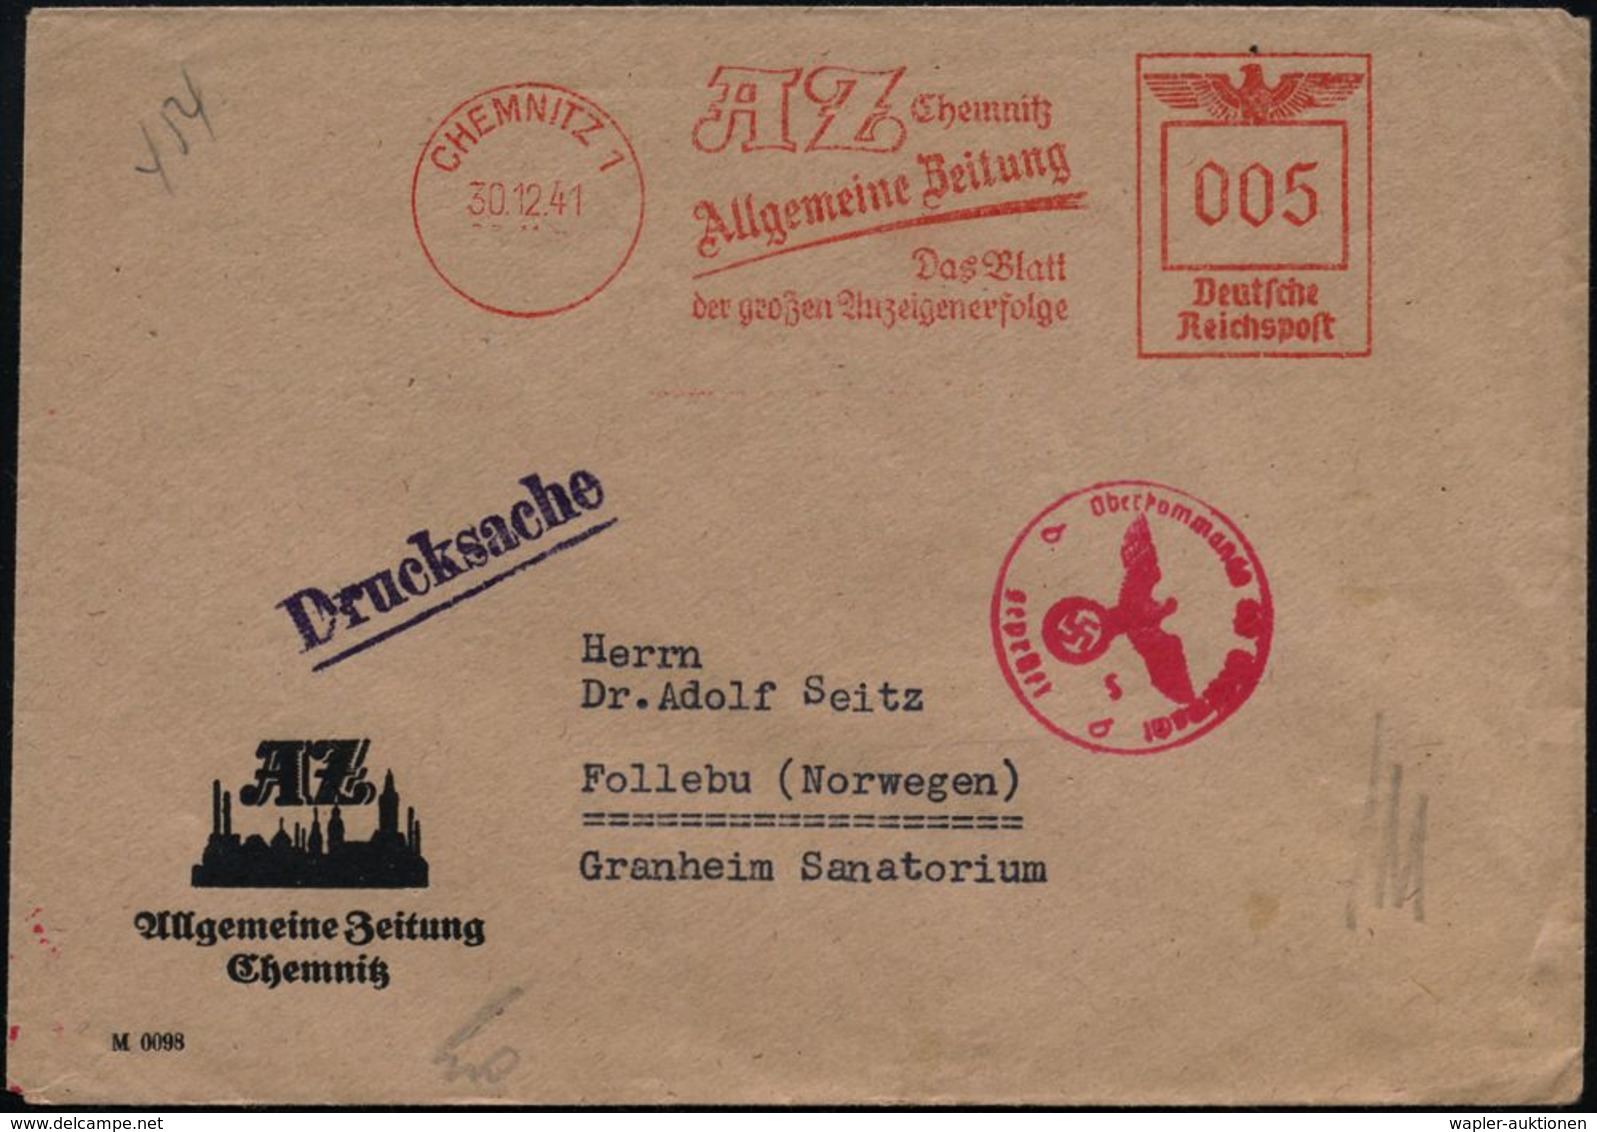 CHEMNITZ 1/ AZ../ Allgemeine Zeitung... 1941 (30.12.) AFS 005 Pf. + Roter OKW-Zenszr-1K: "b" = Berlin (Rie.B-9, 50 Pkte. - 2. Weltkrieg